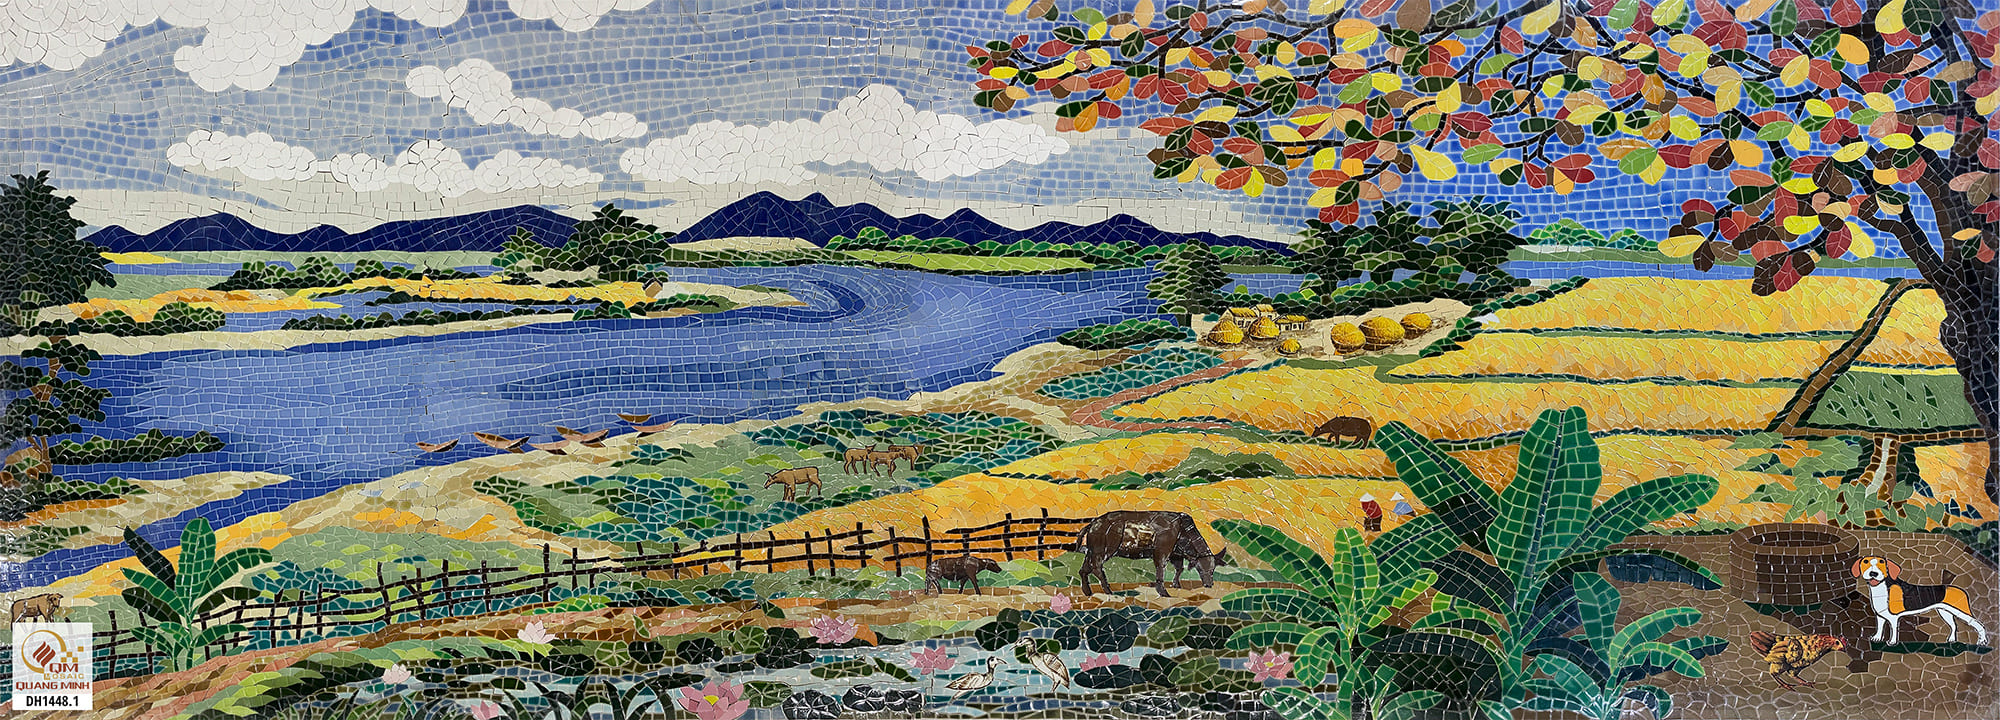 Tranh mosaic Gốm Phong cảnh Đồng Lúa QM-DL01